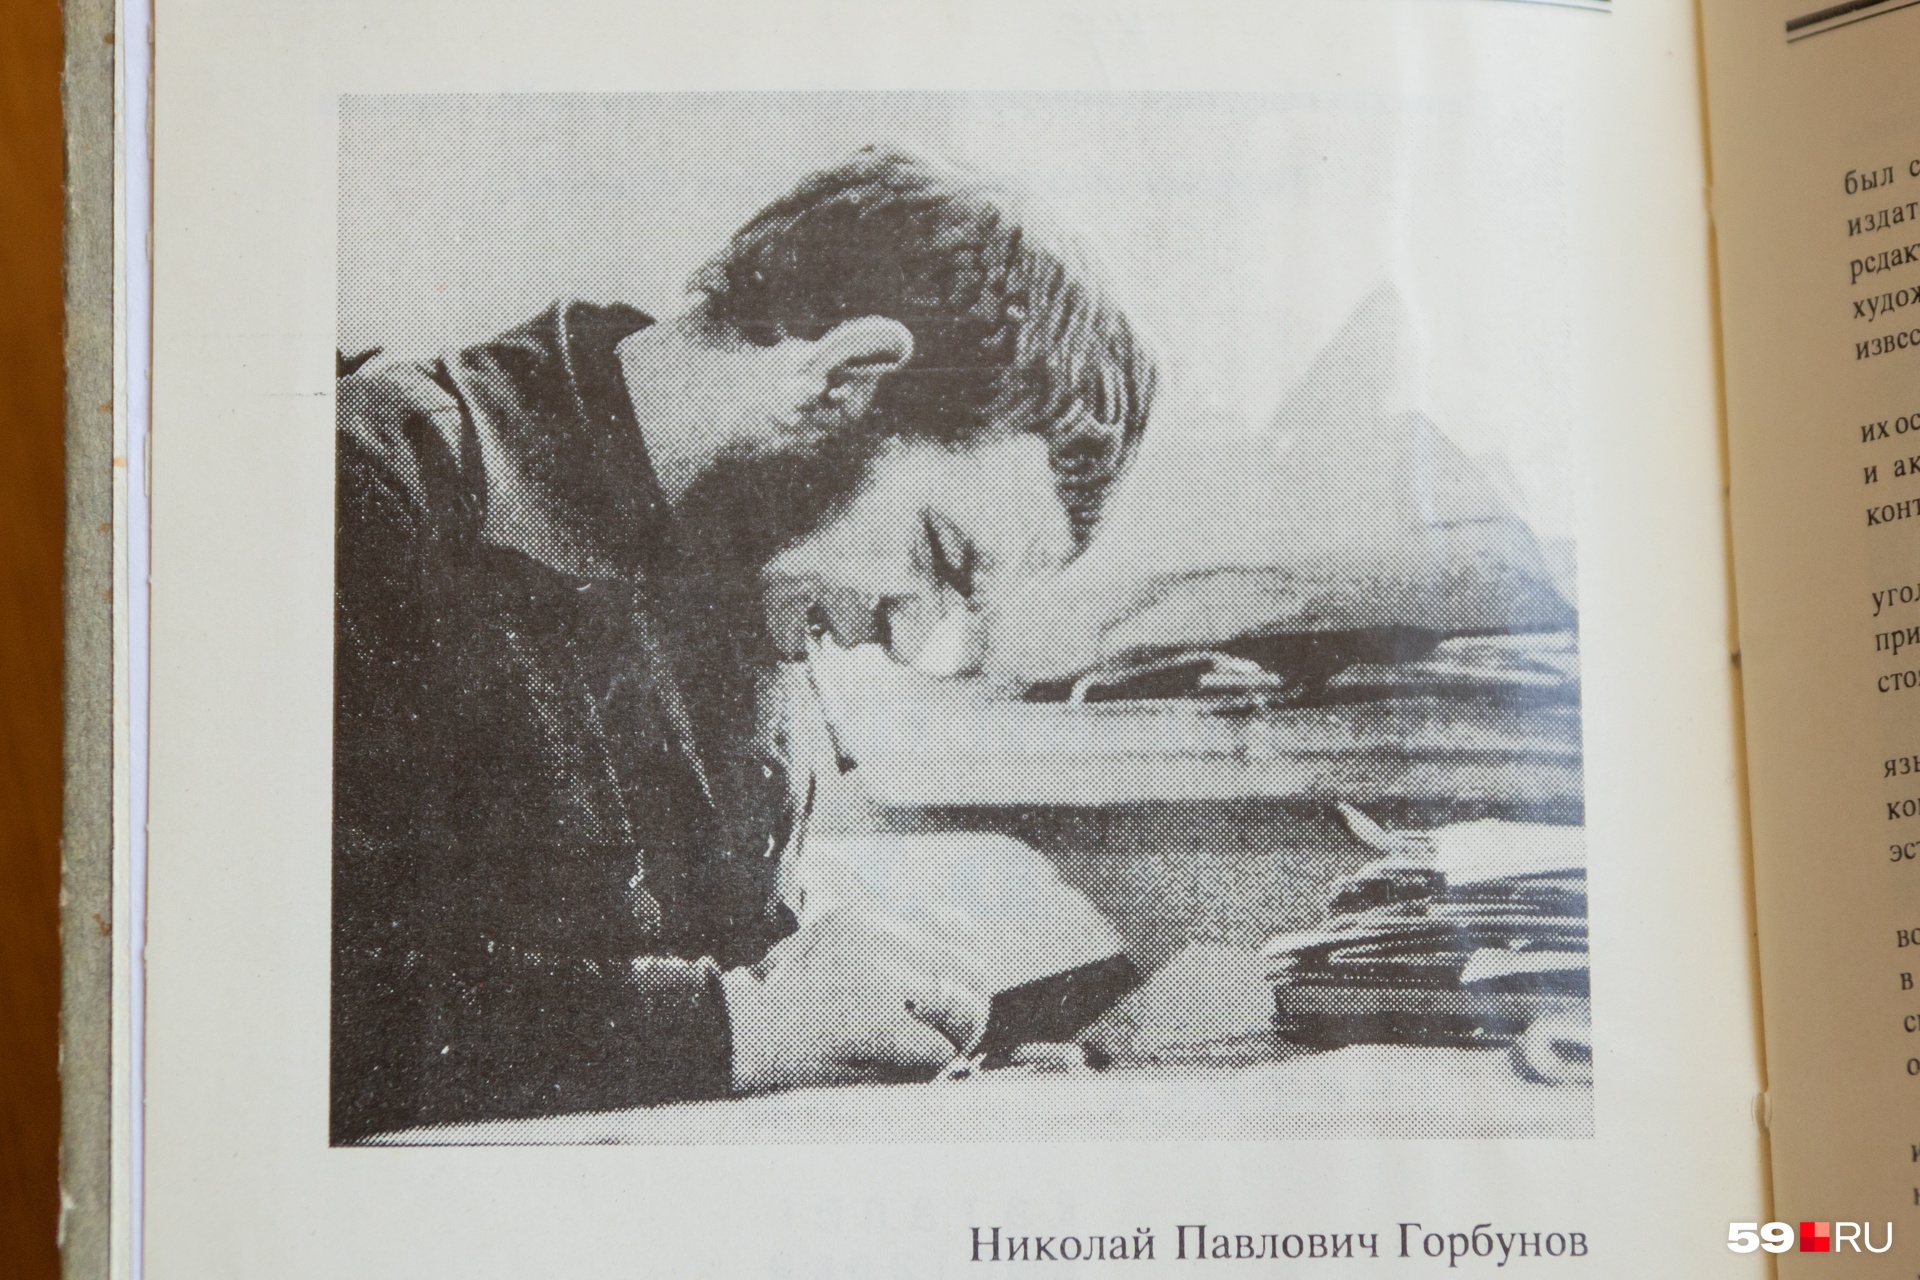 Горбунов во время работы: фото в одном из каталогов